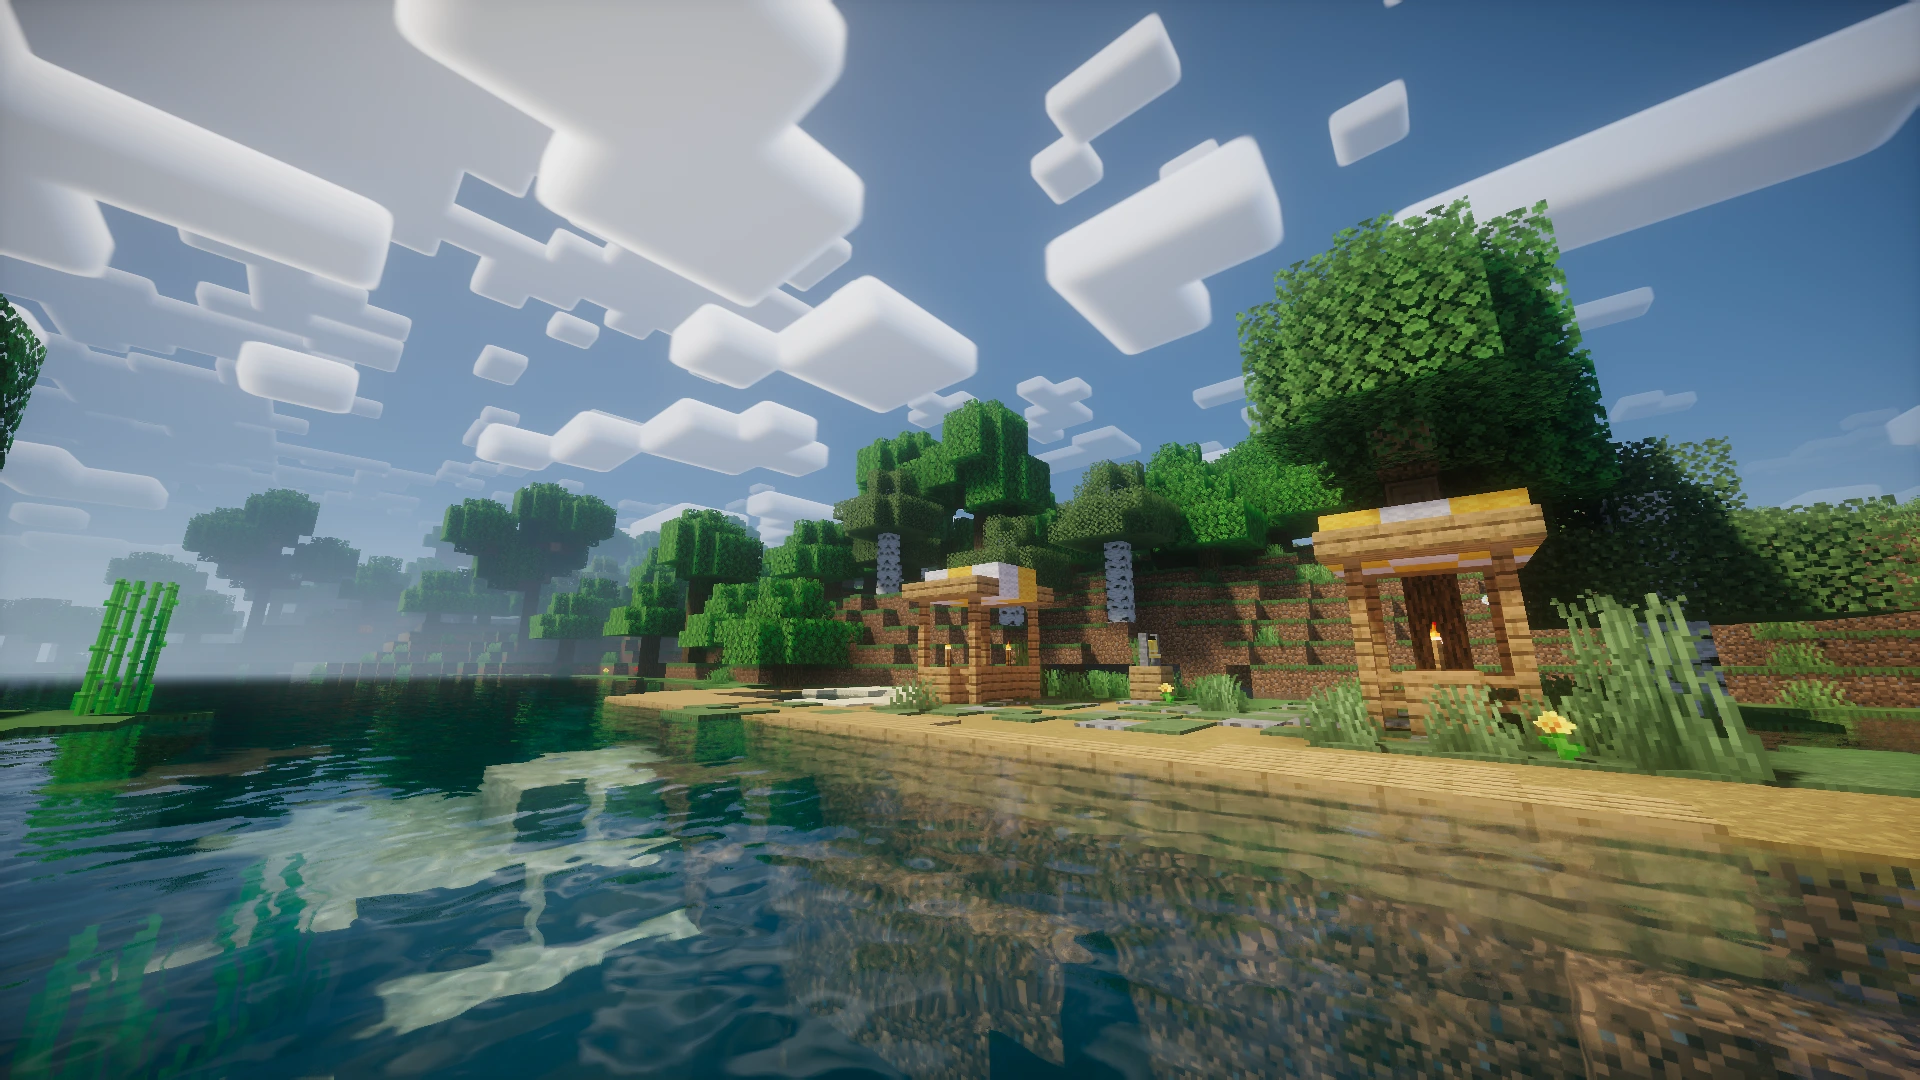 Minecraft village marketplace with Nostalgia Shader